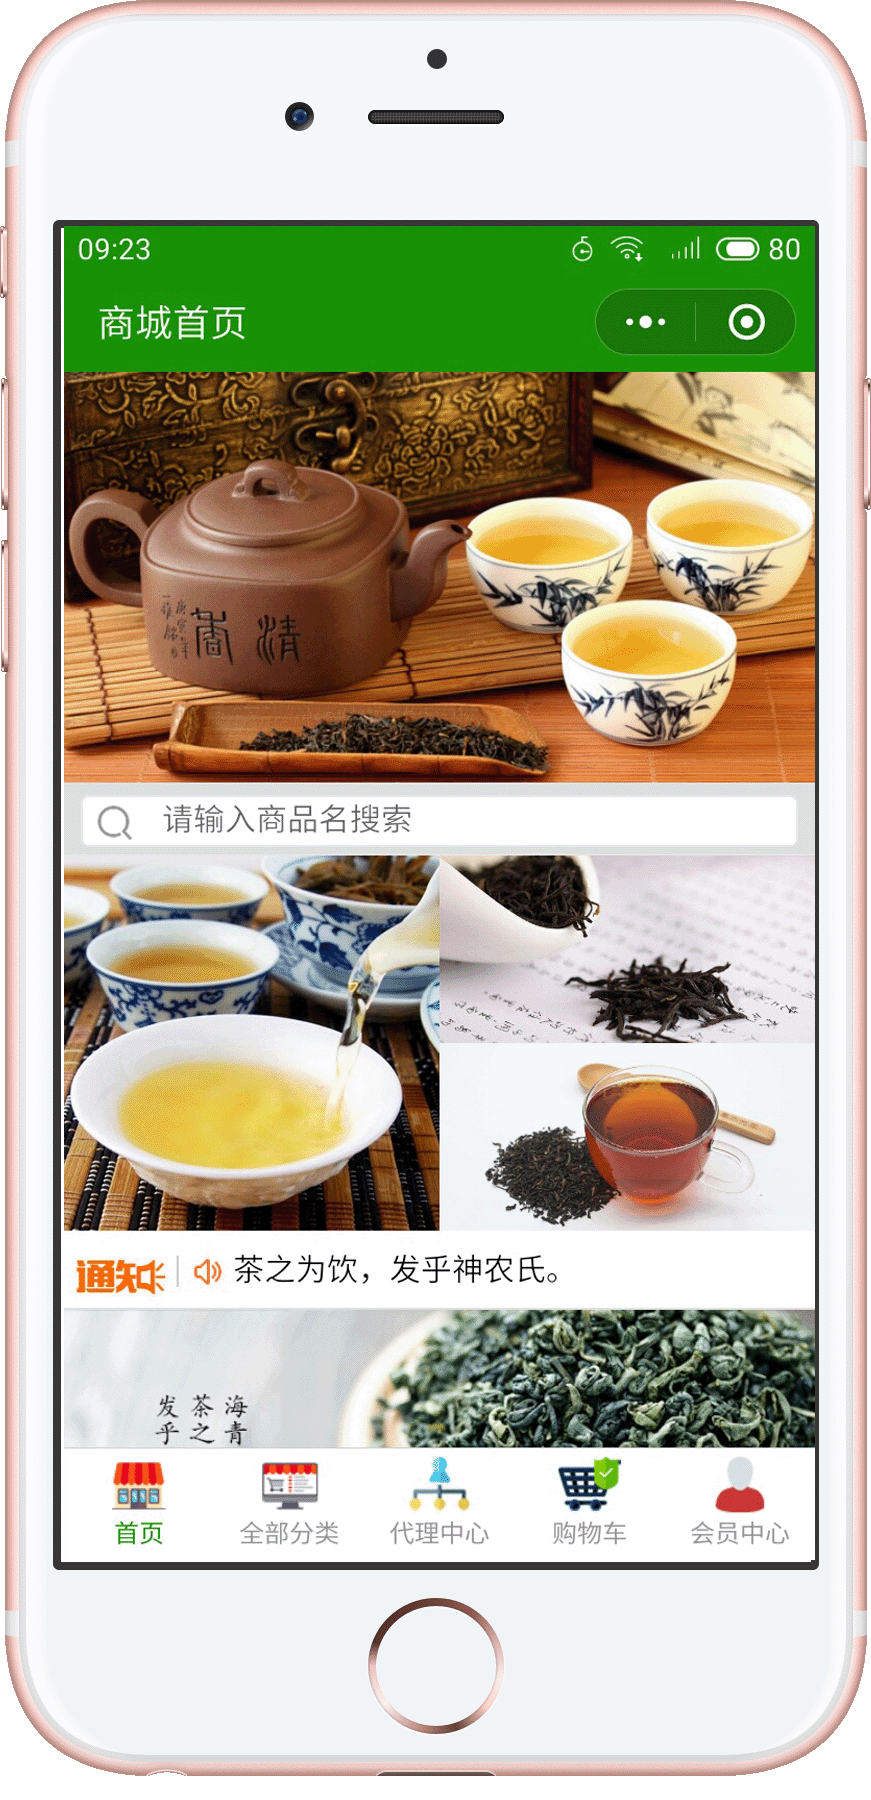 青岛海青茶案例展示小程序公众号网站开发案例